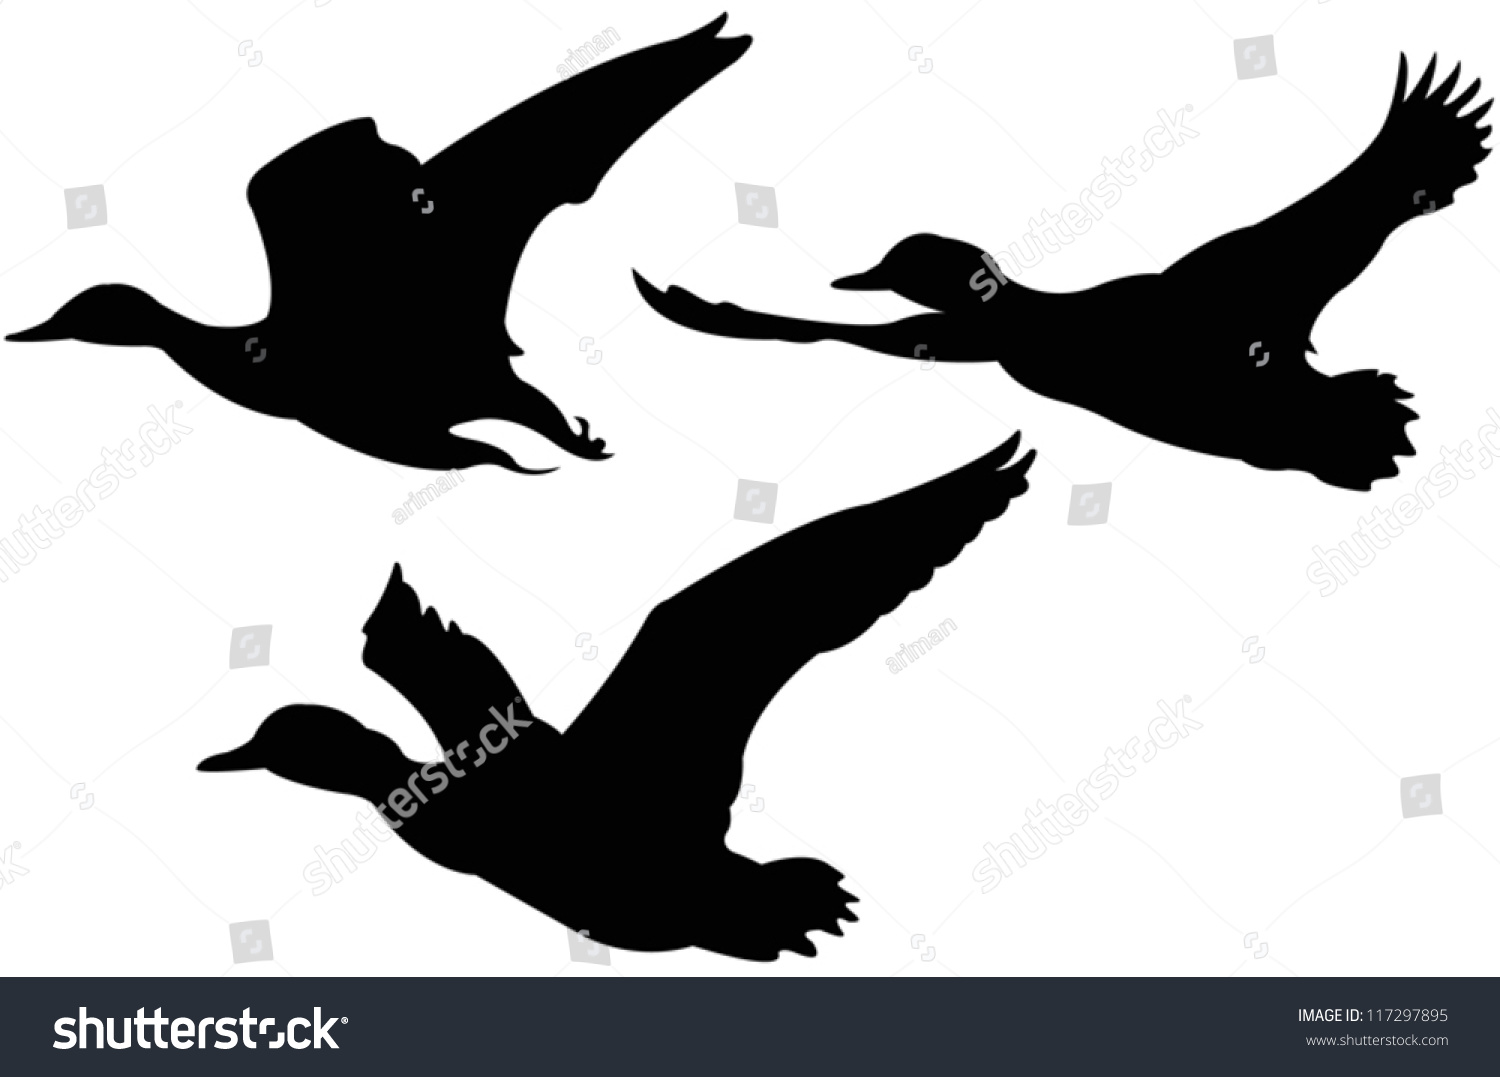 Vector File Of Flying Ducks - 117297895 : Shutterstock